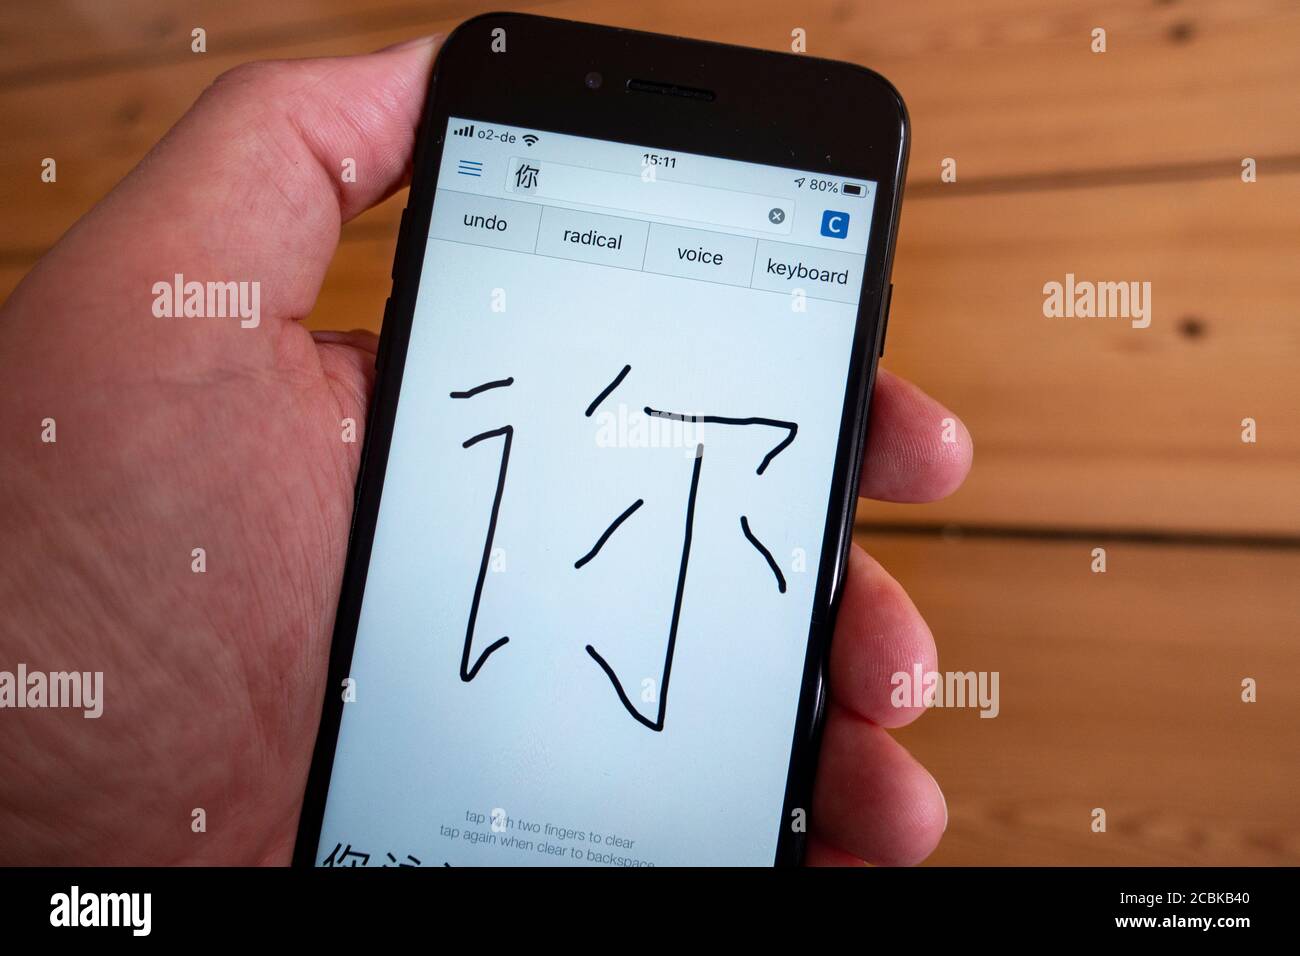 Détail de l'application de traduction de langues montrant la saisie manuscrite du mandarin Caractère chinois sur l'écran d'un smartphone Banque D'Images